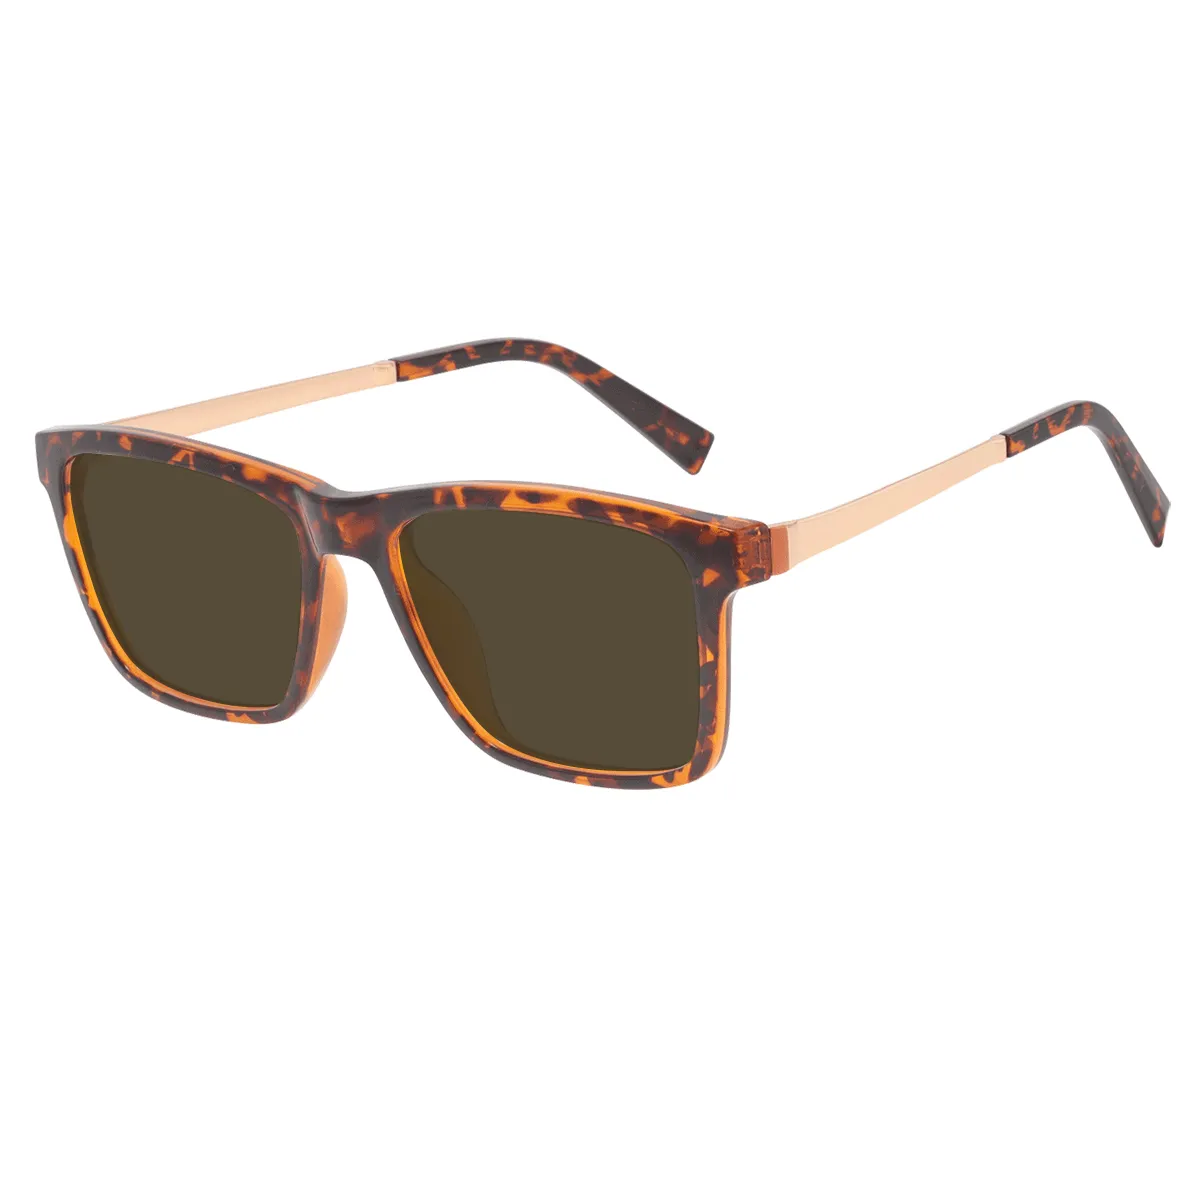 Merle - Square Tortoiseshell Sunglasses for Men & Women